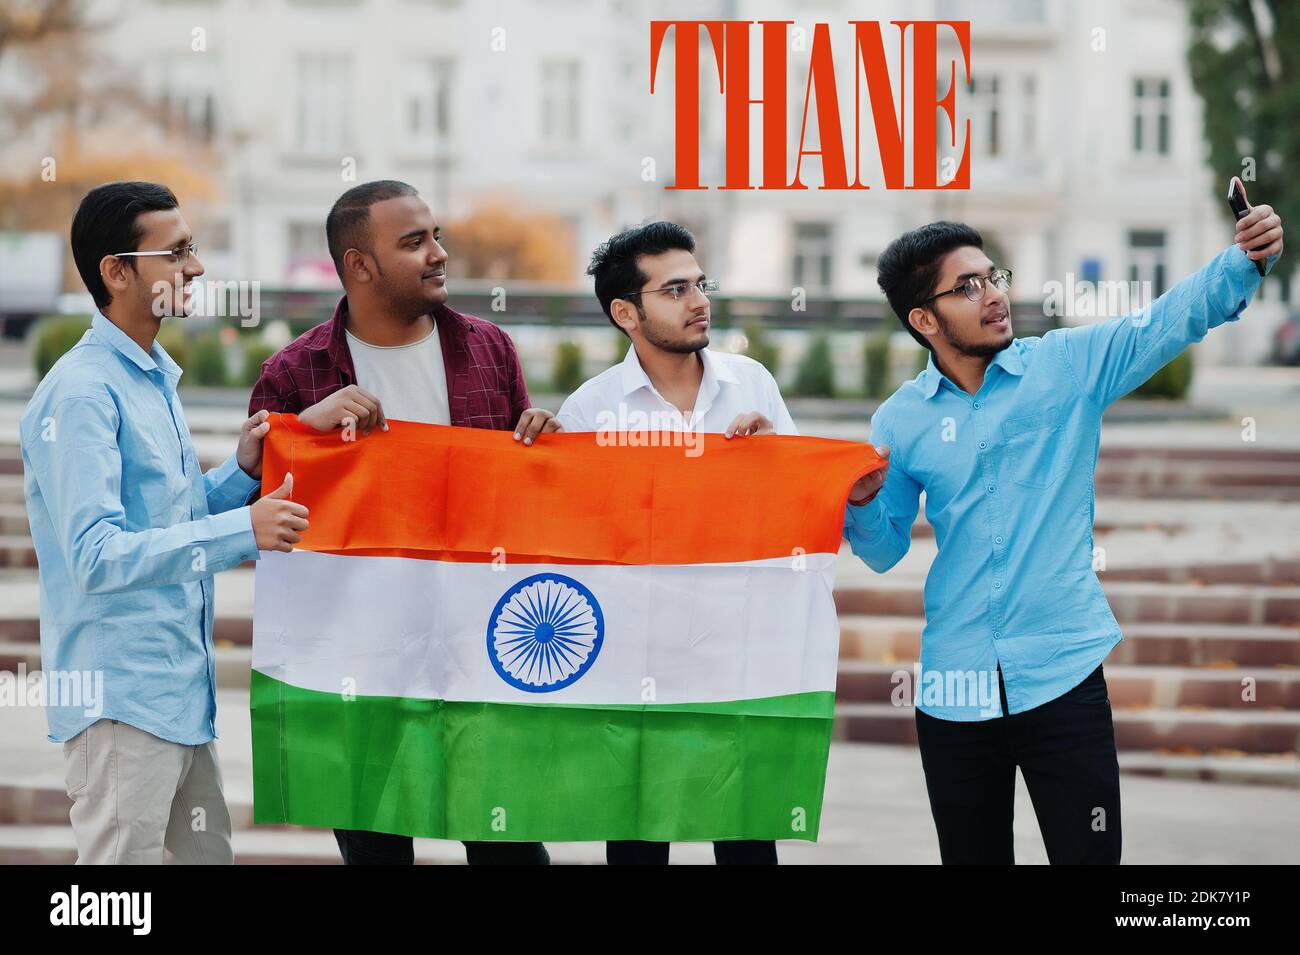 Inscription de la ville de Thane. Groupe de quatre amis indiens masculins avec drapeau indien faisant selfie sur téléphone mobile. Concept des plus grandes villes de l'Inde. Banque D'Images